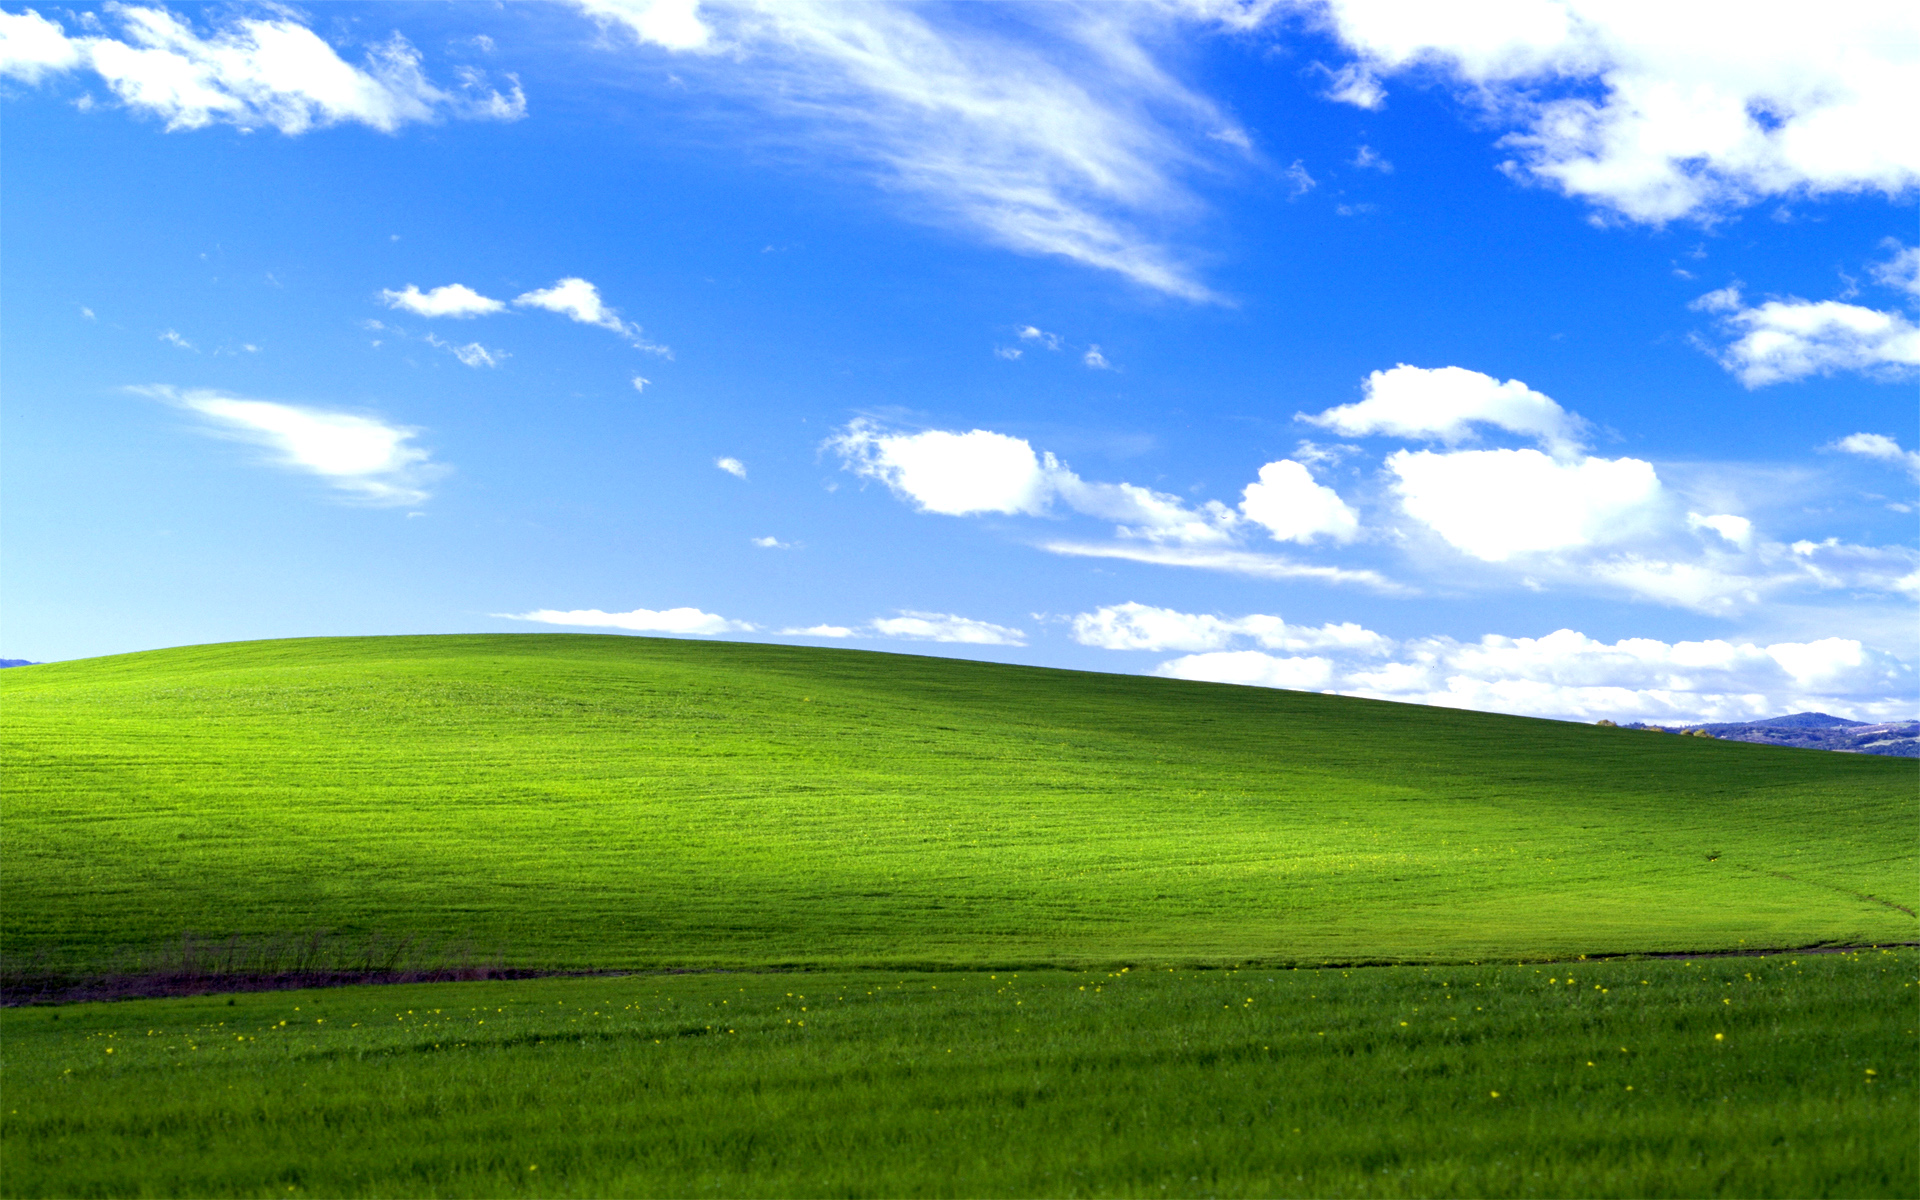 Bạn muốn khám phá những hình nền đẹp đến từ khắp thế giới dựa trên phong cách Windows XP? Với hơn 100 mẫu hình nền đầy đủ, chúng tôi sẽ giúp bạn có thể tìm kiếm và tải về những bức tranh nền đẹp nhất mà không tốn quá nhiều thời gian.